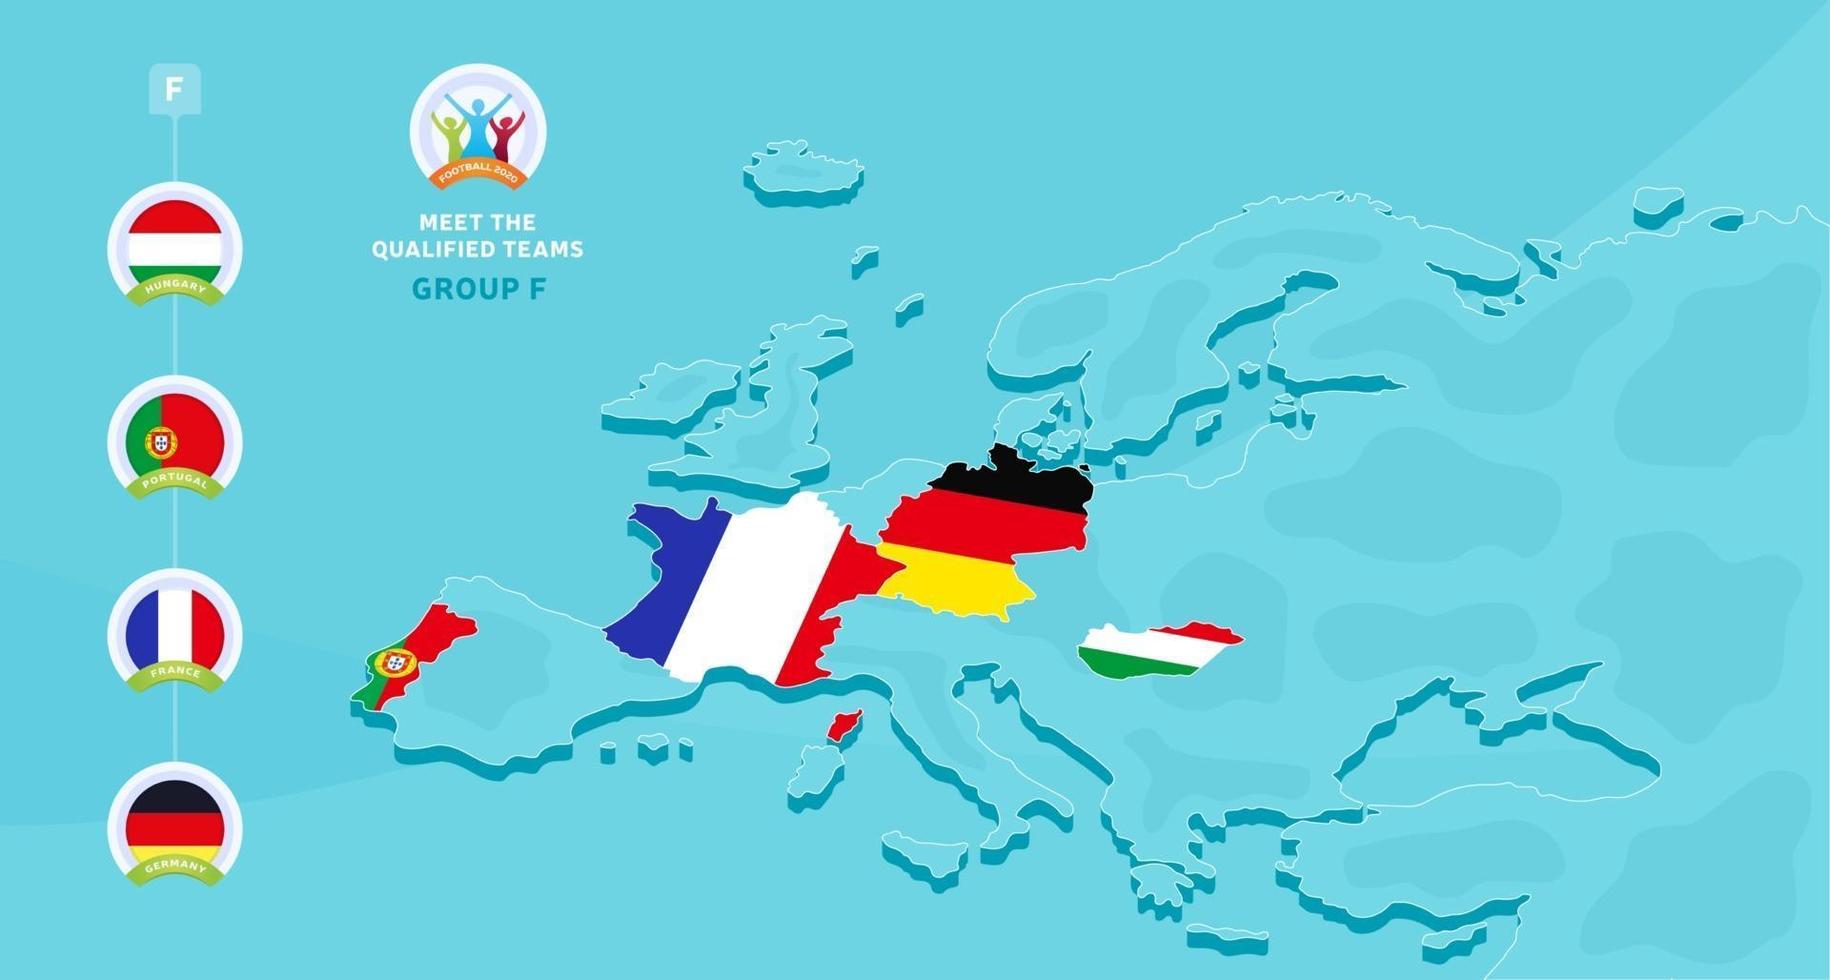 gruppo f illustrazione vettoriale del campionato di calcio europeo 2020 con una mappa dell'europa e bandiera dei paesi evidenziati qualificati per la fase finale e segno del logo su sfondo blu